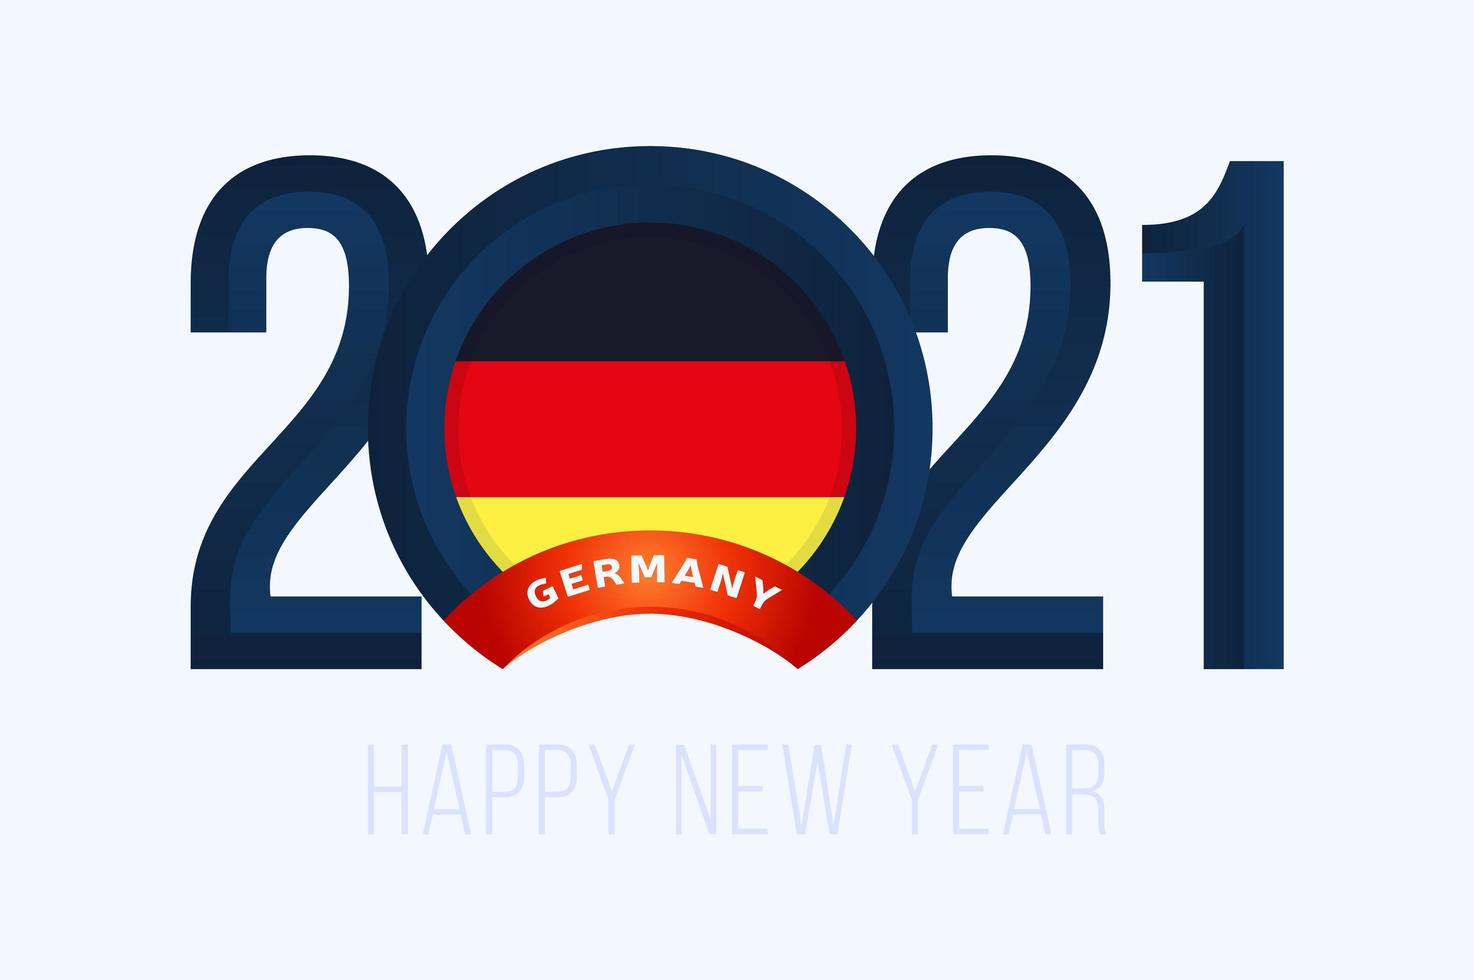 tipografia de ano novo 2021 com bandeira da alemanha vetor